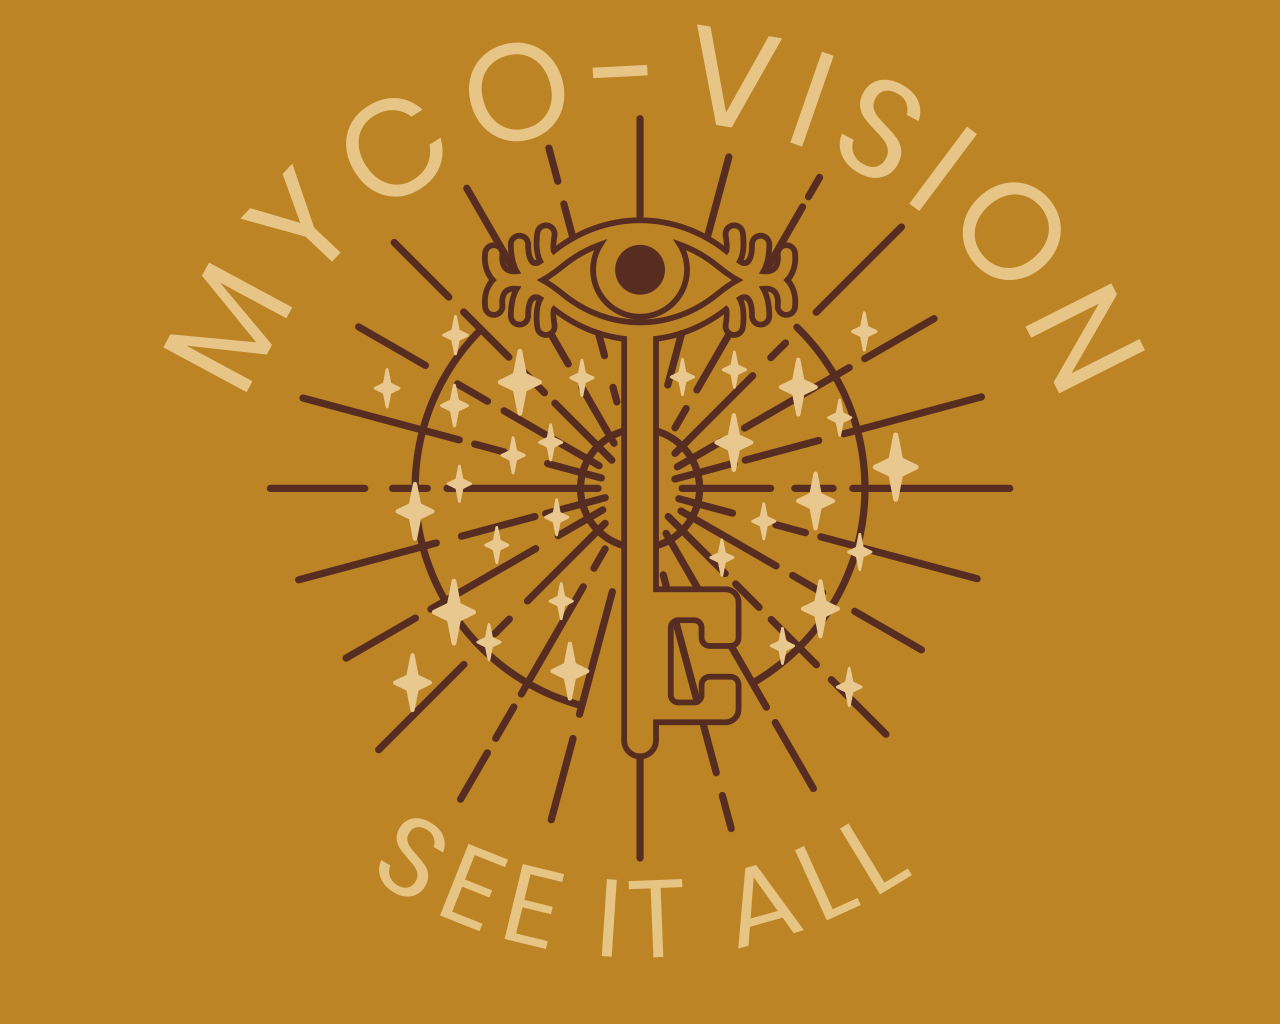 MycoVision